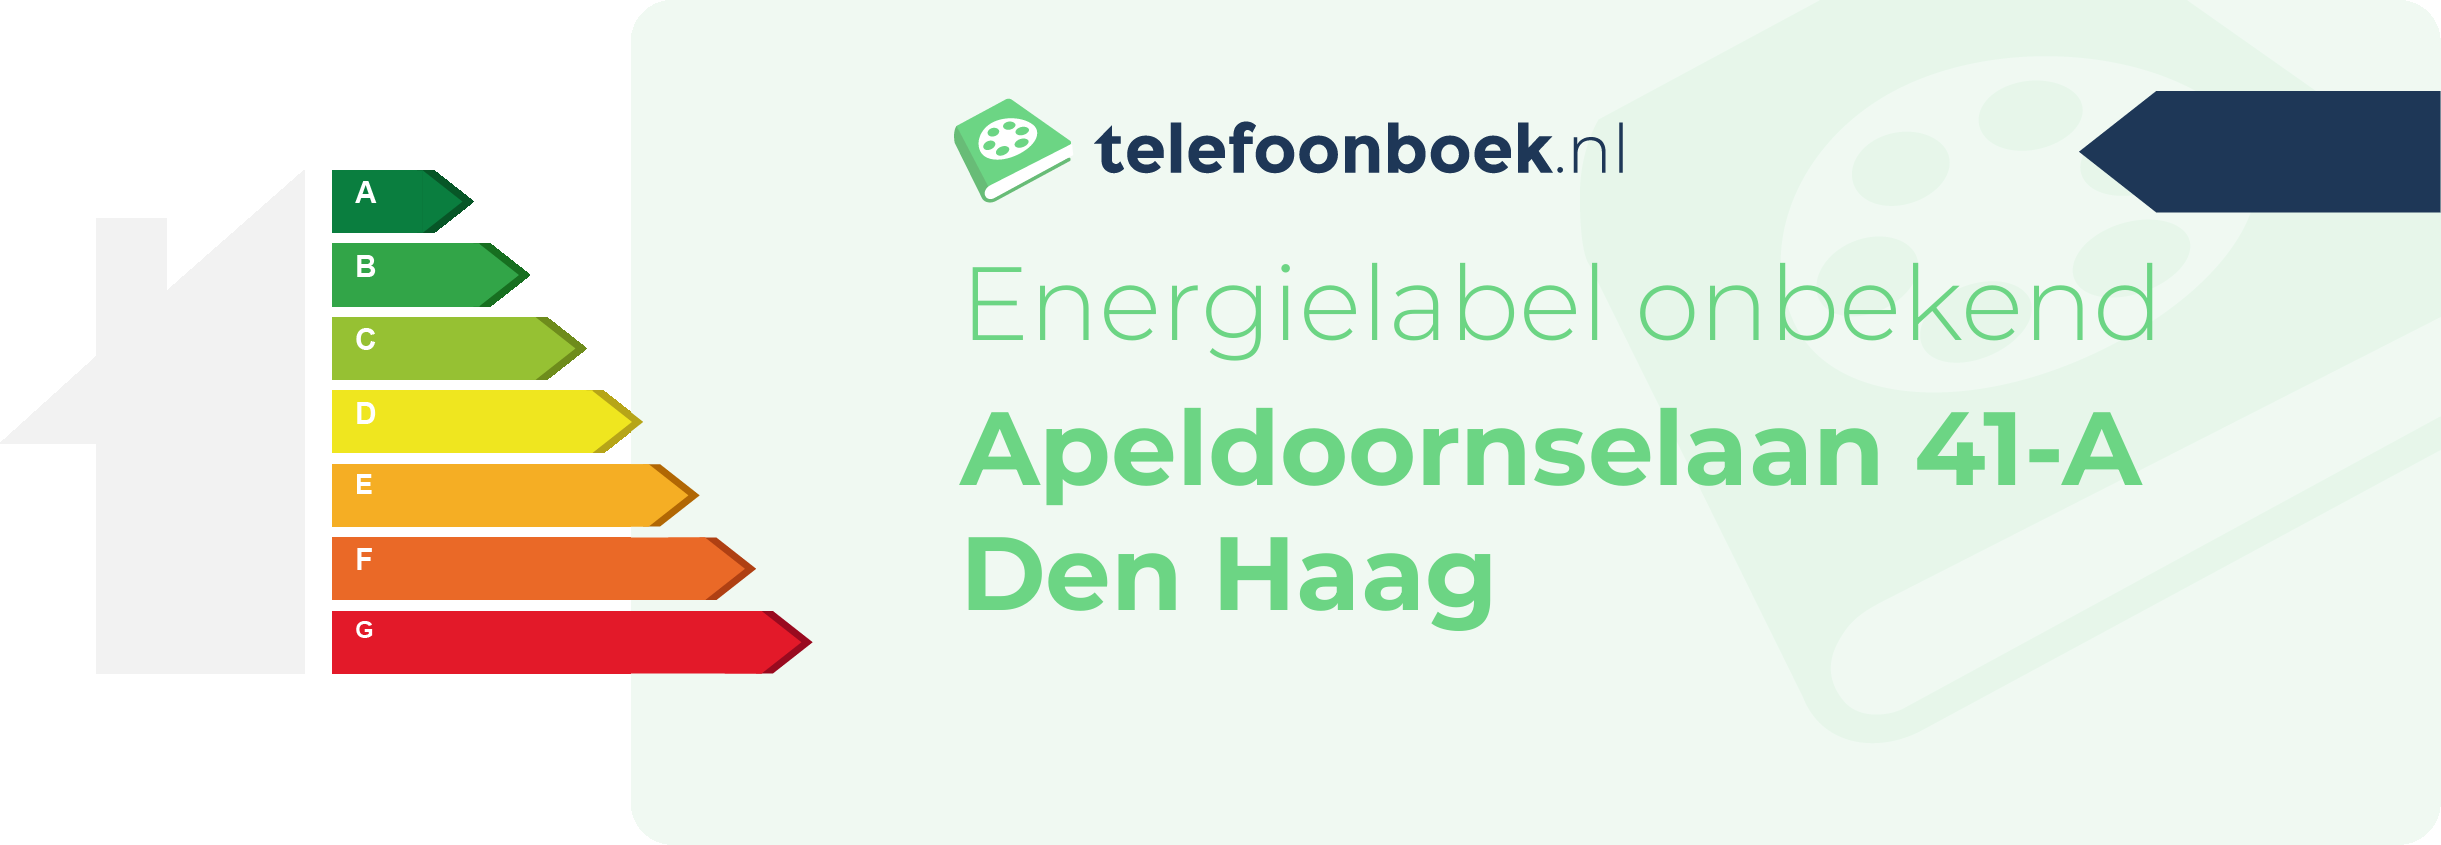 Energielabel Apeldoornselaan 41-A Den Haag